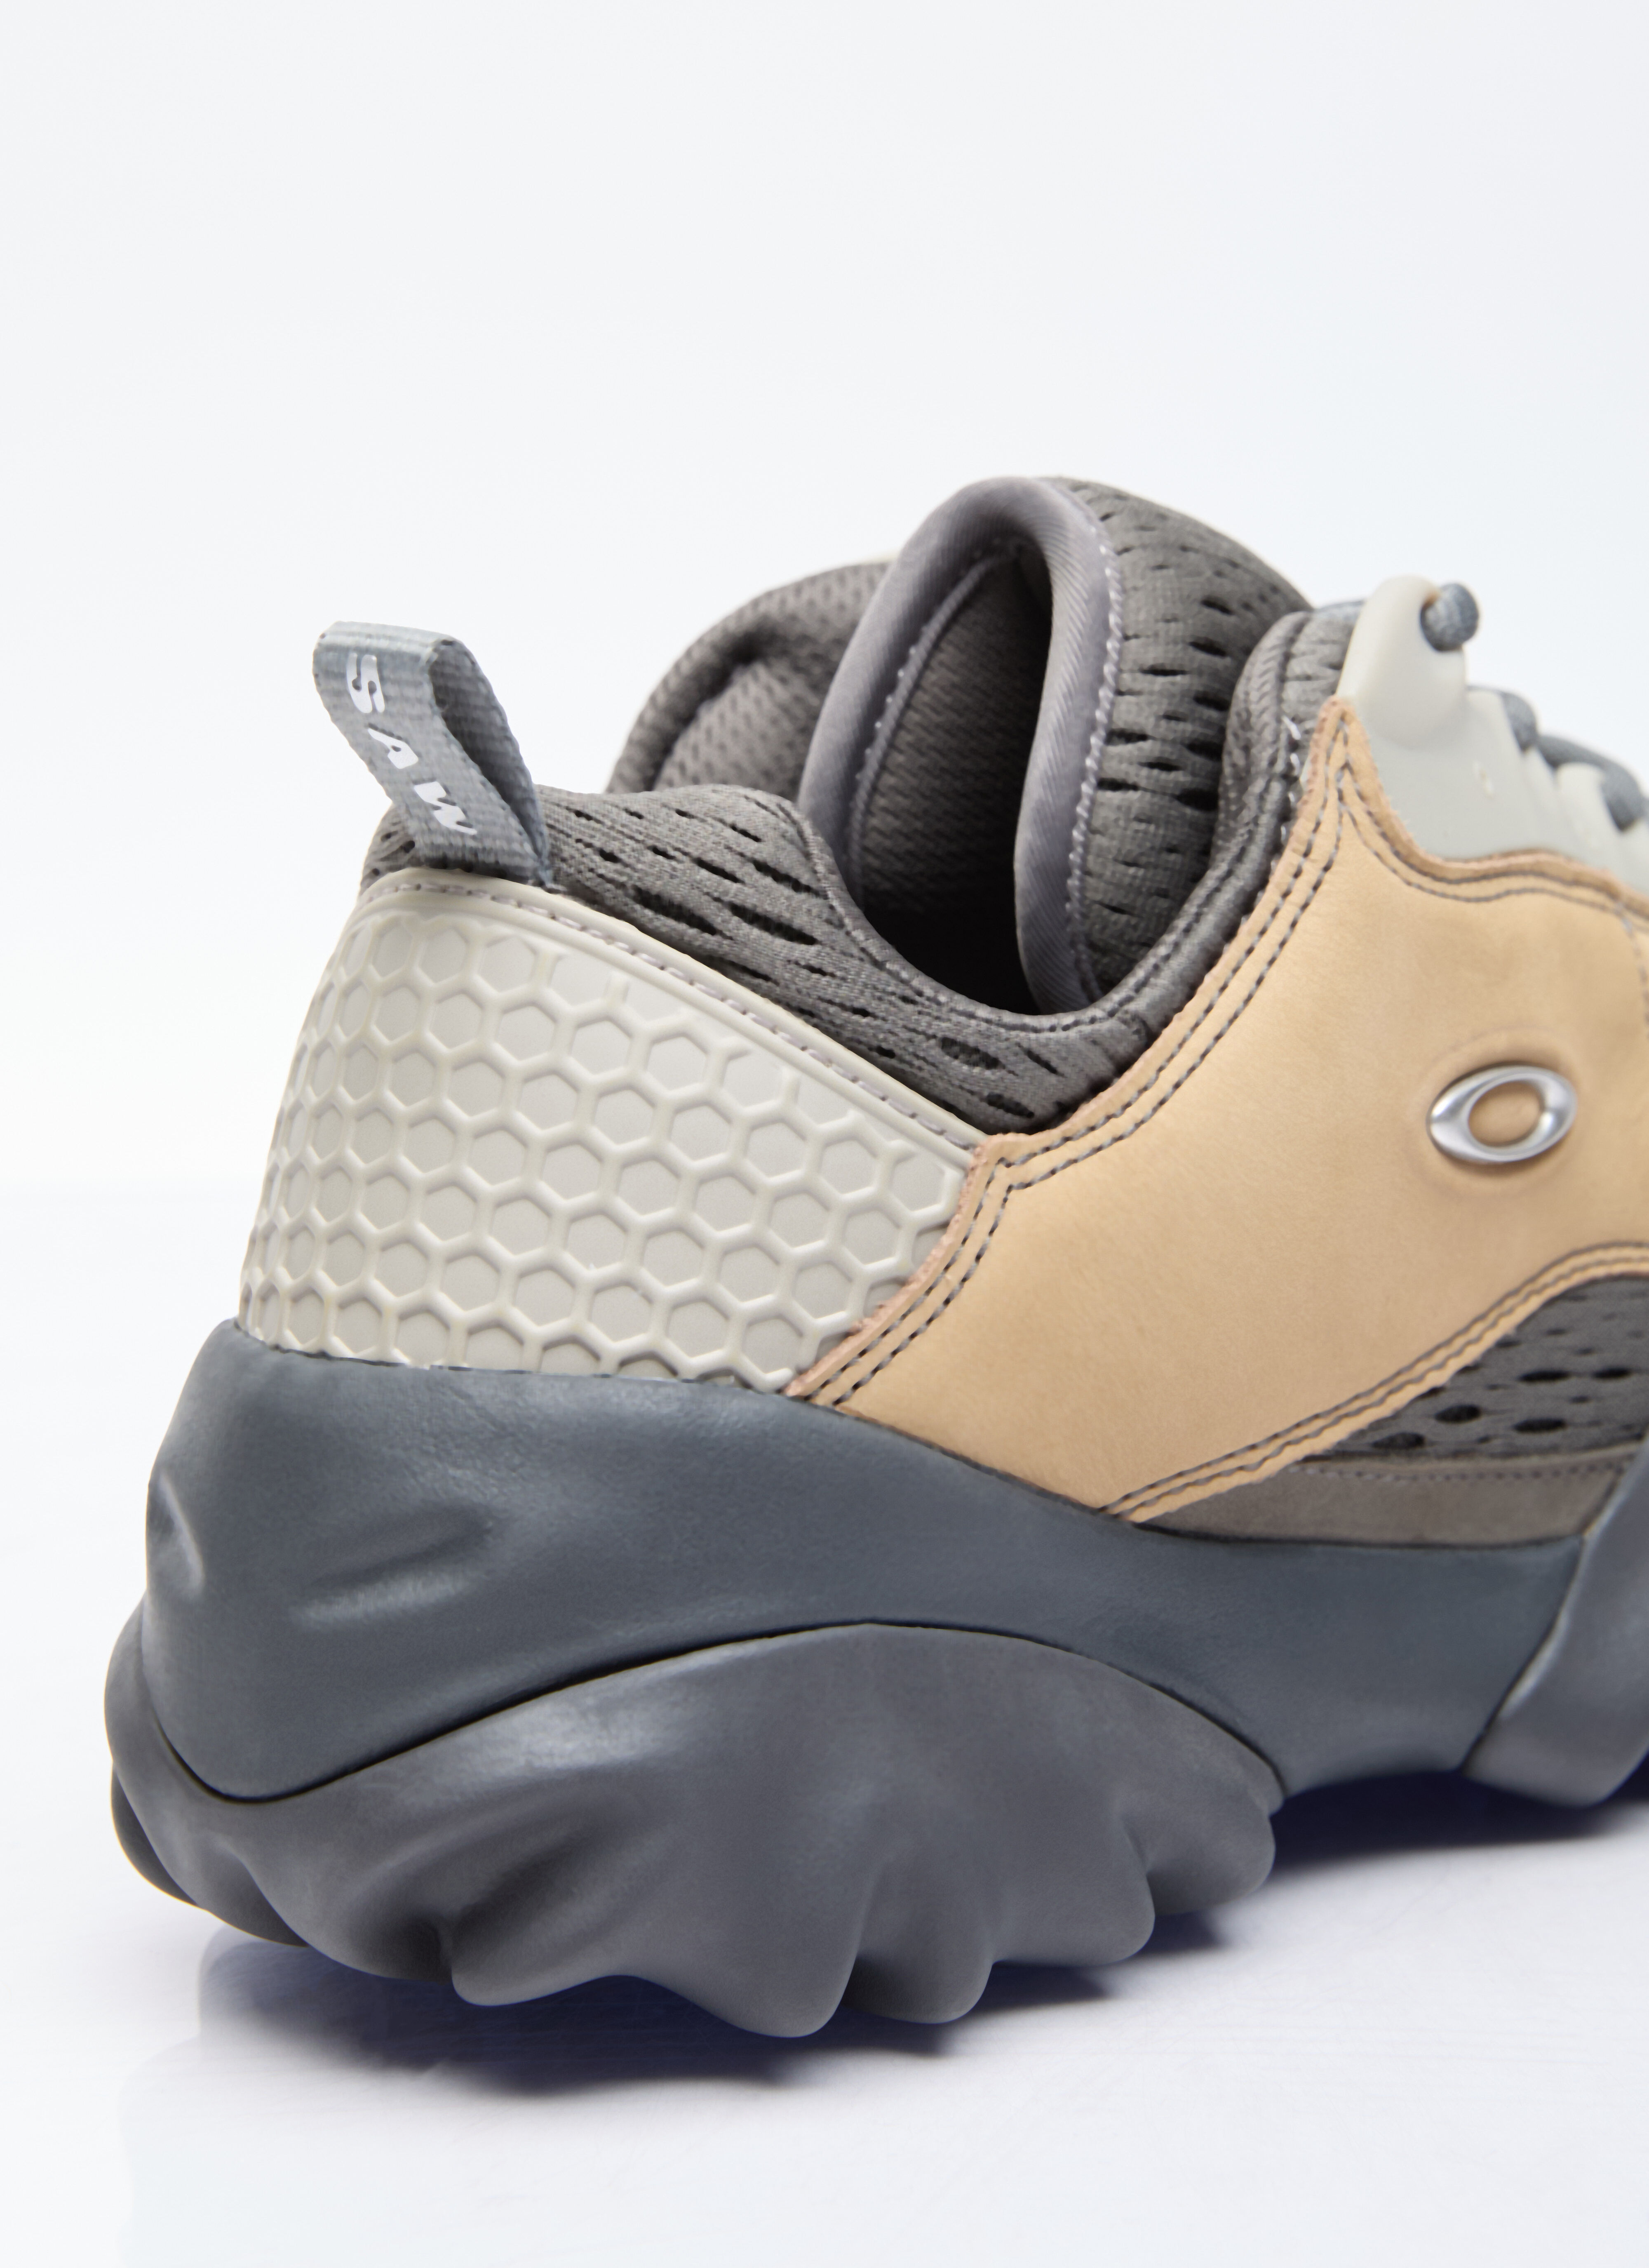 Oakley Factory Team Men's Nubuck Chop Saw Sneakers in Beige | LN-CC®